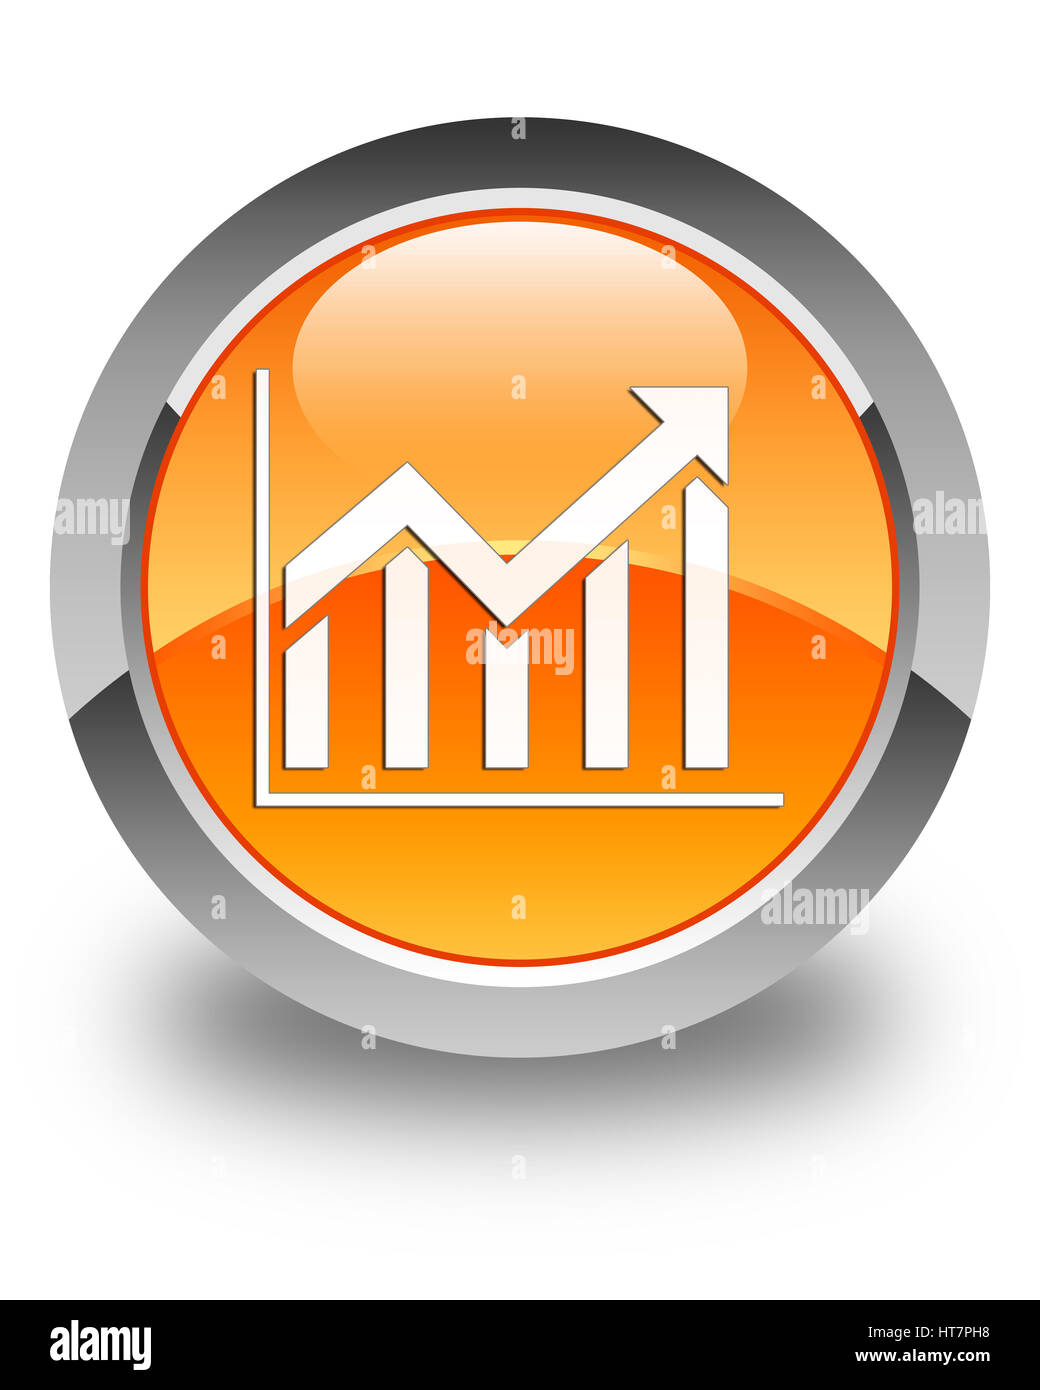 Icona statistiche isolate su arancio lucido pulsante rotondo illustrazione astratta Foto Stock